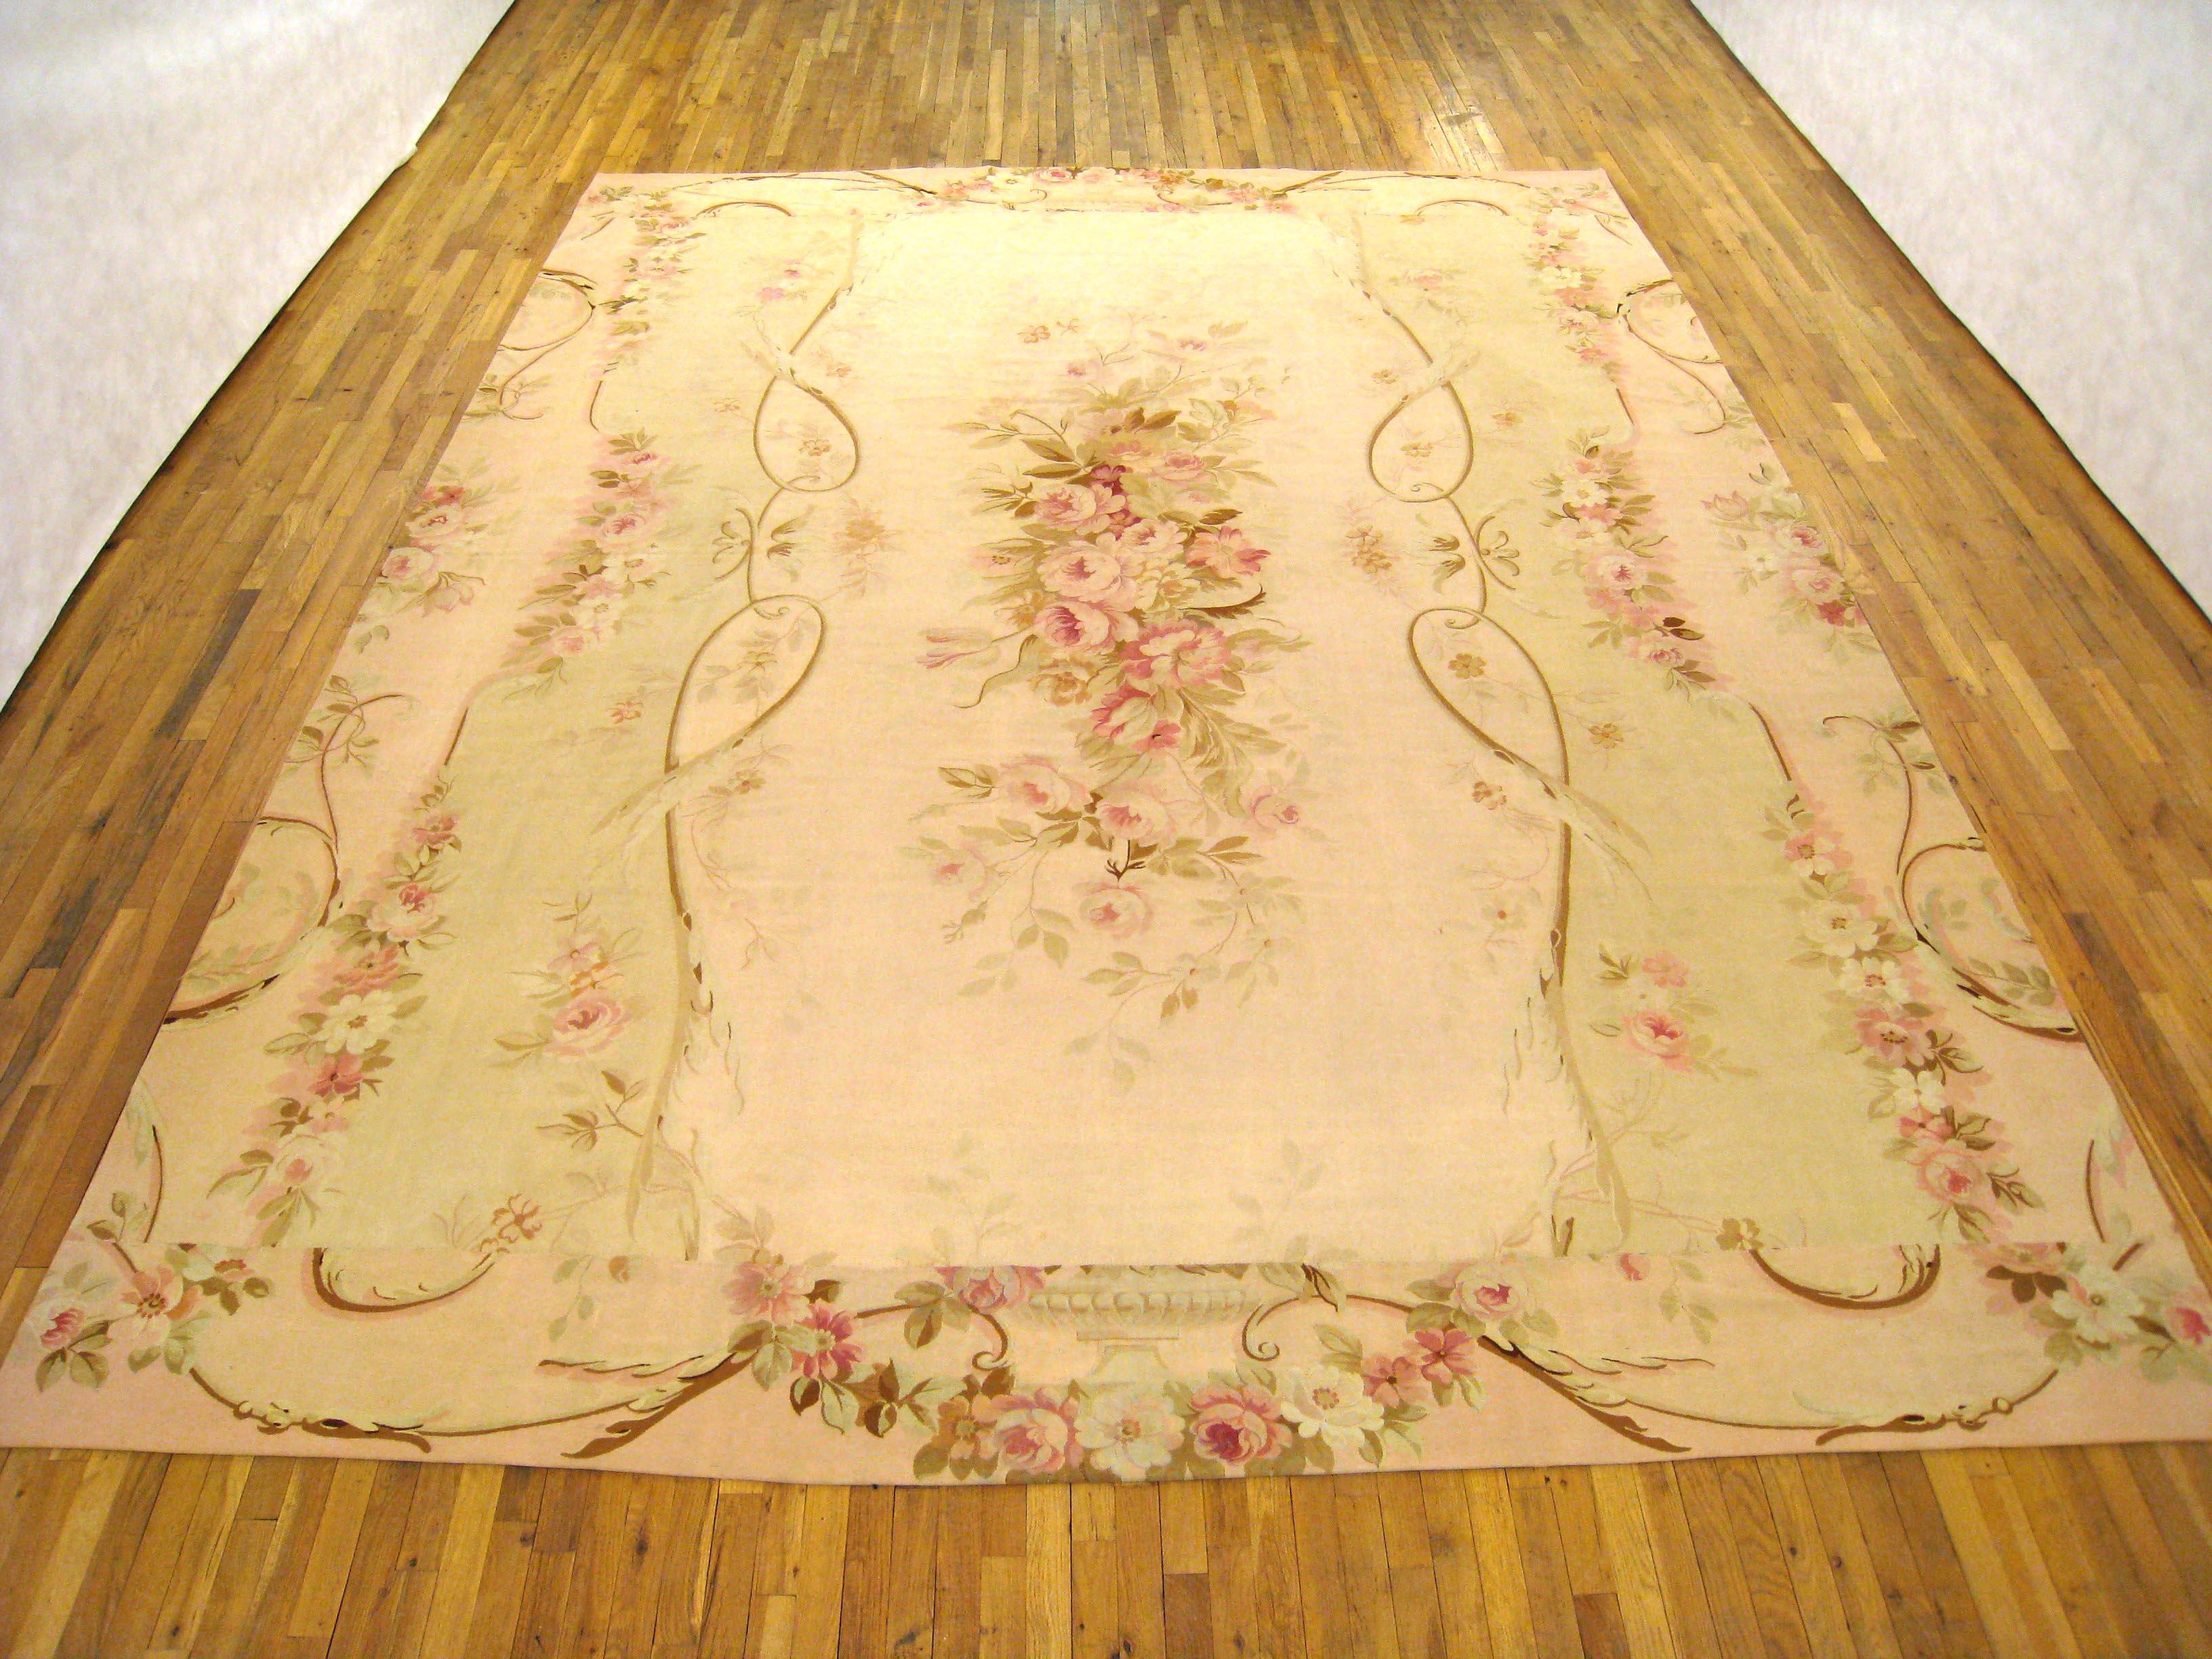 Un ancien tapis français d'Aubusson, de dimensions 14'0 x 10'9, vers 1890. Ce beau tapis français en laine tissé à plat de l'époque Louis Philippe présente un élégant médaillon floral au centre et une disposition unique des bordures extérieures, qui